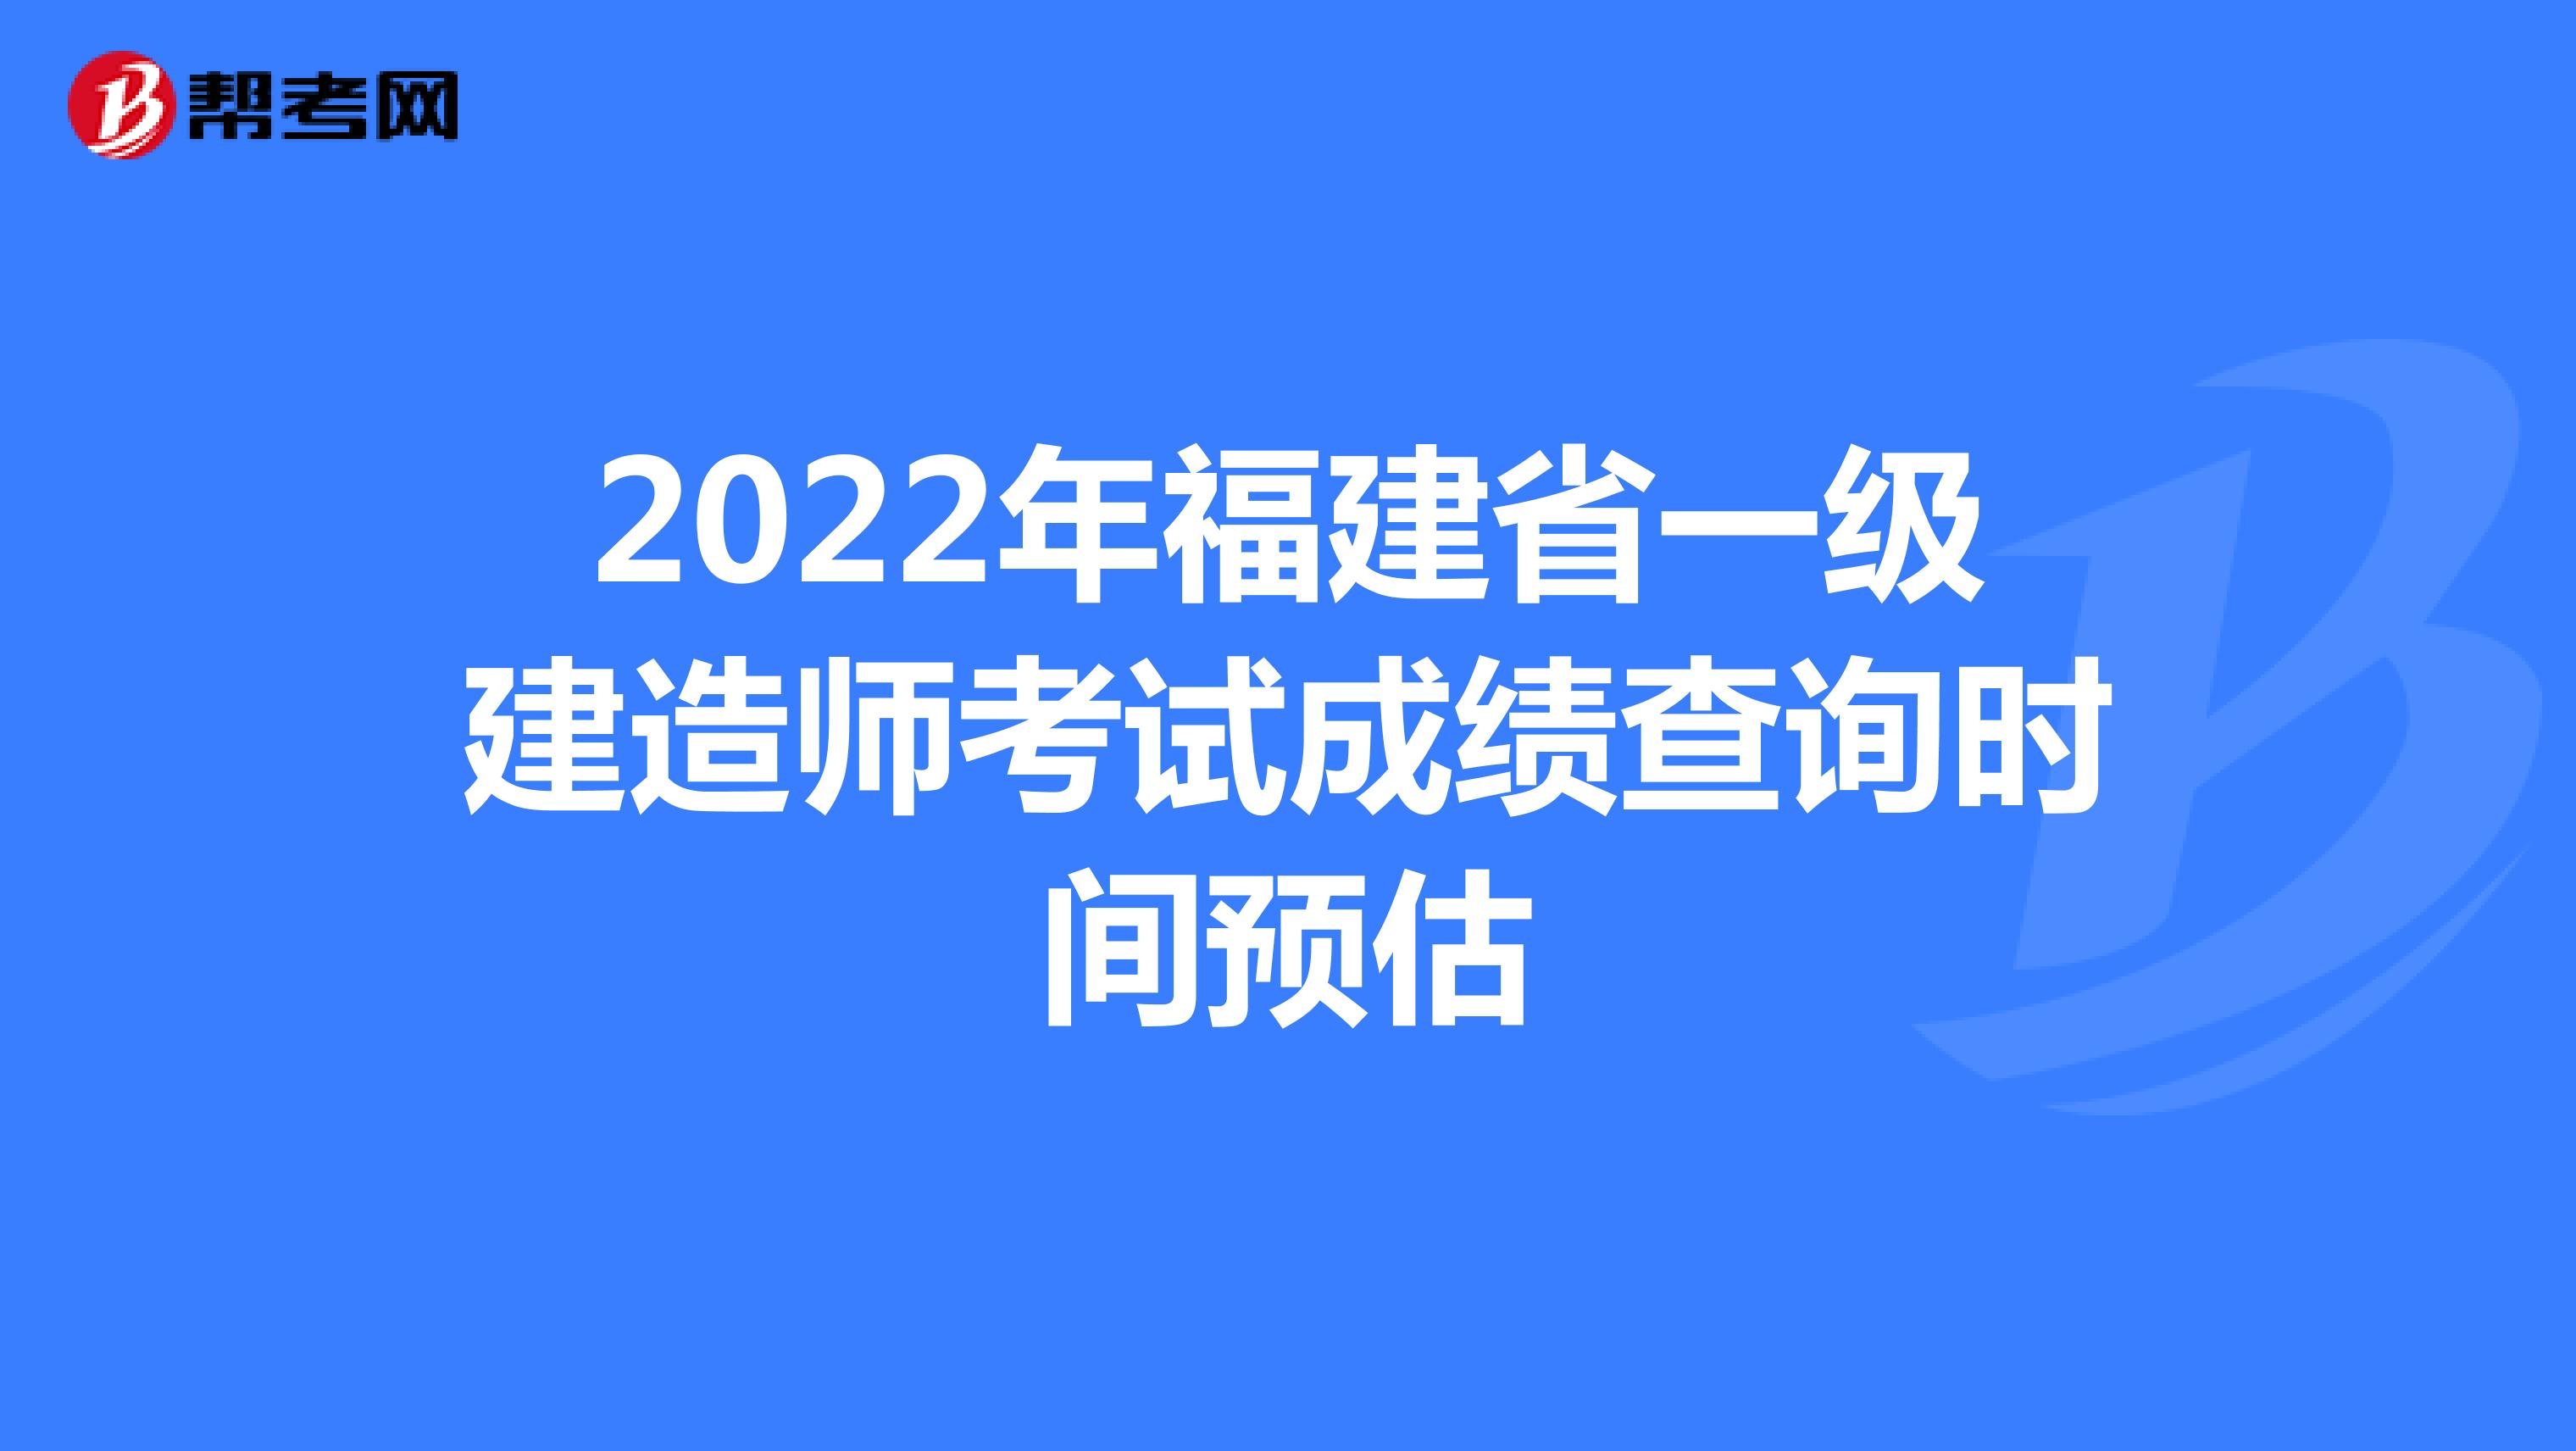 2022年福建省一级建造师考试成绩查询时间预估